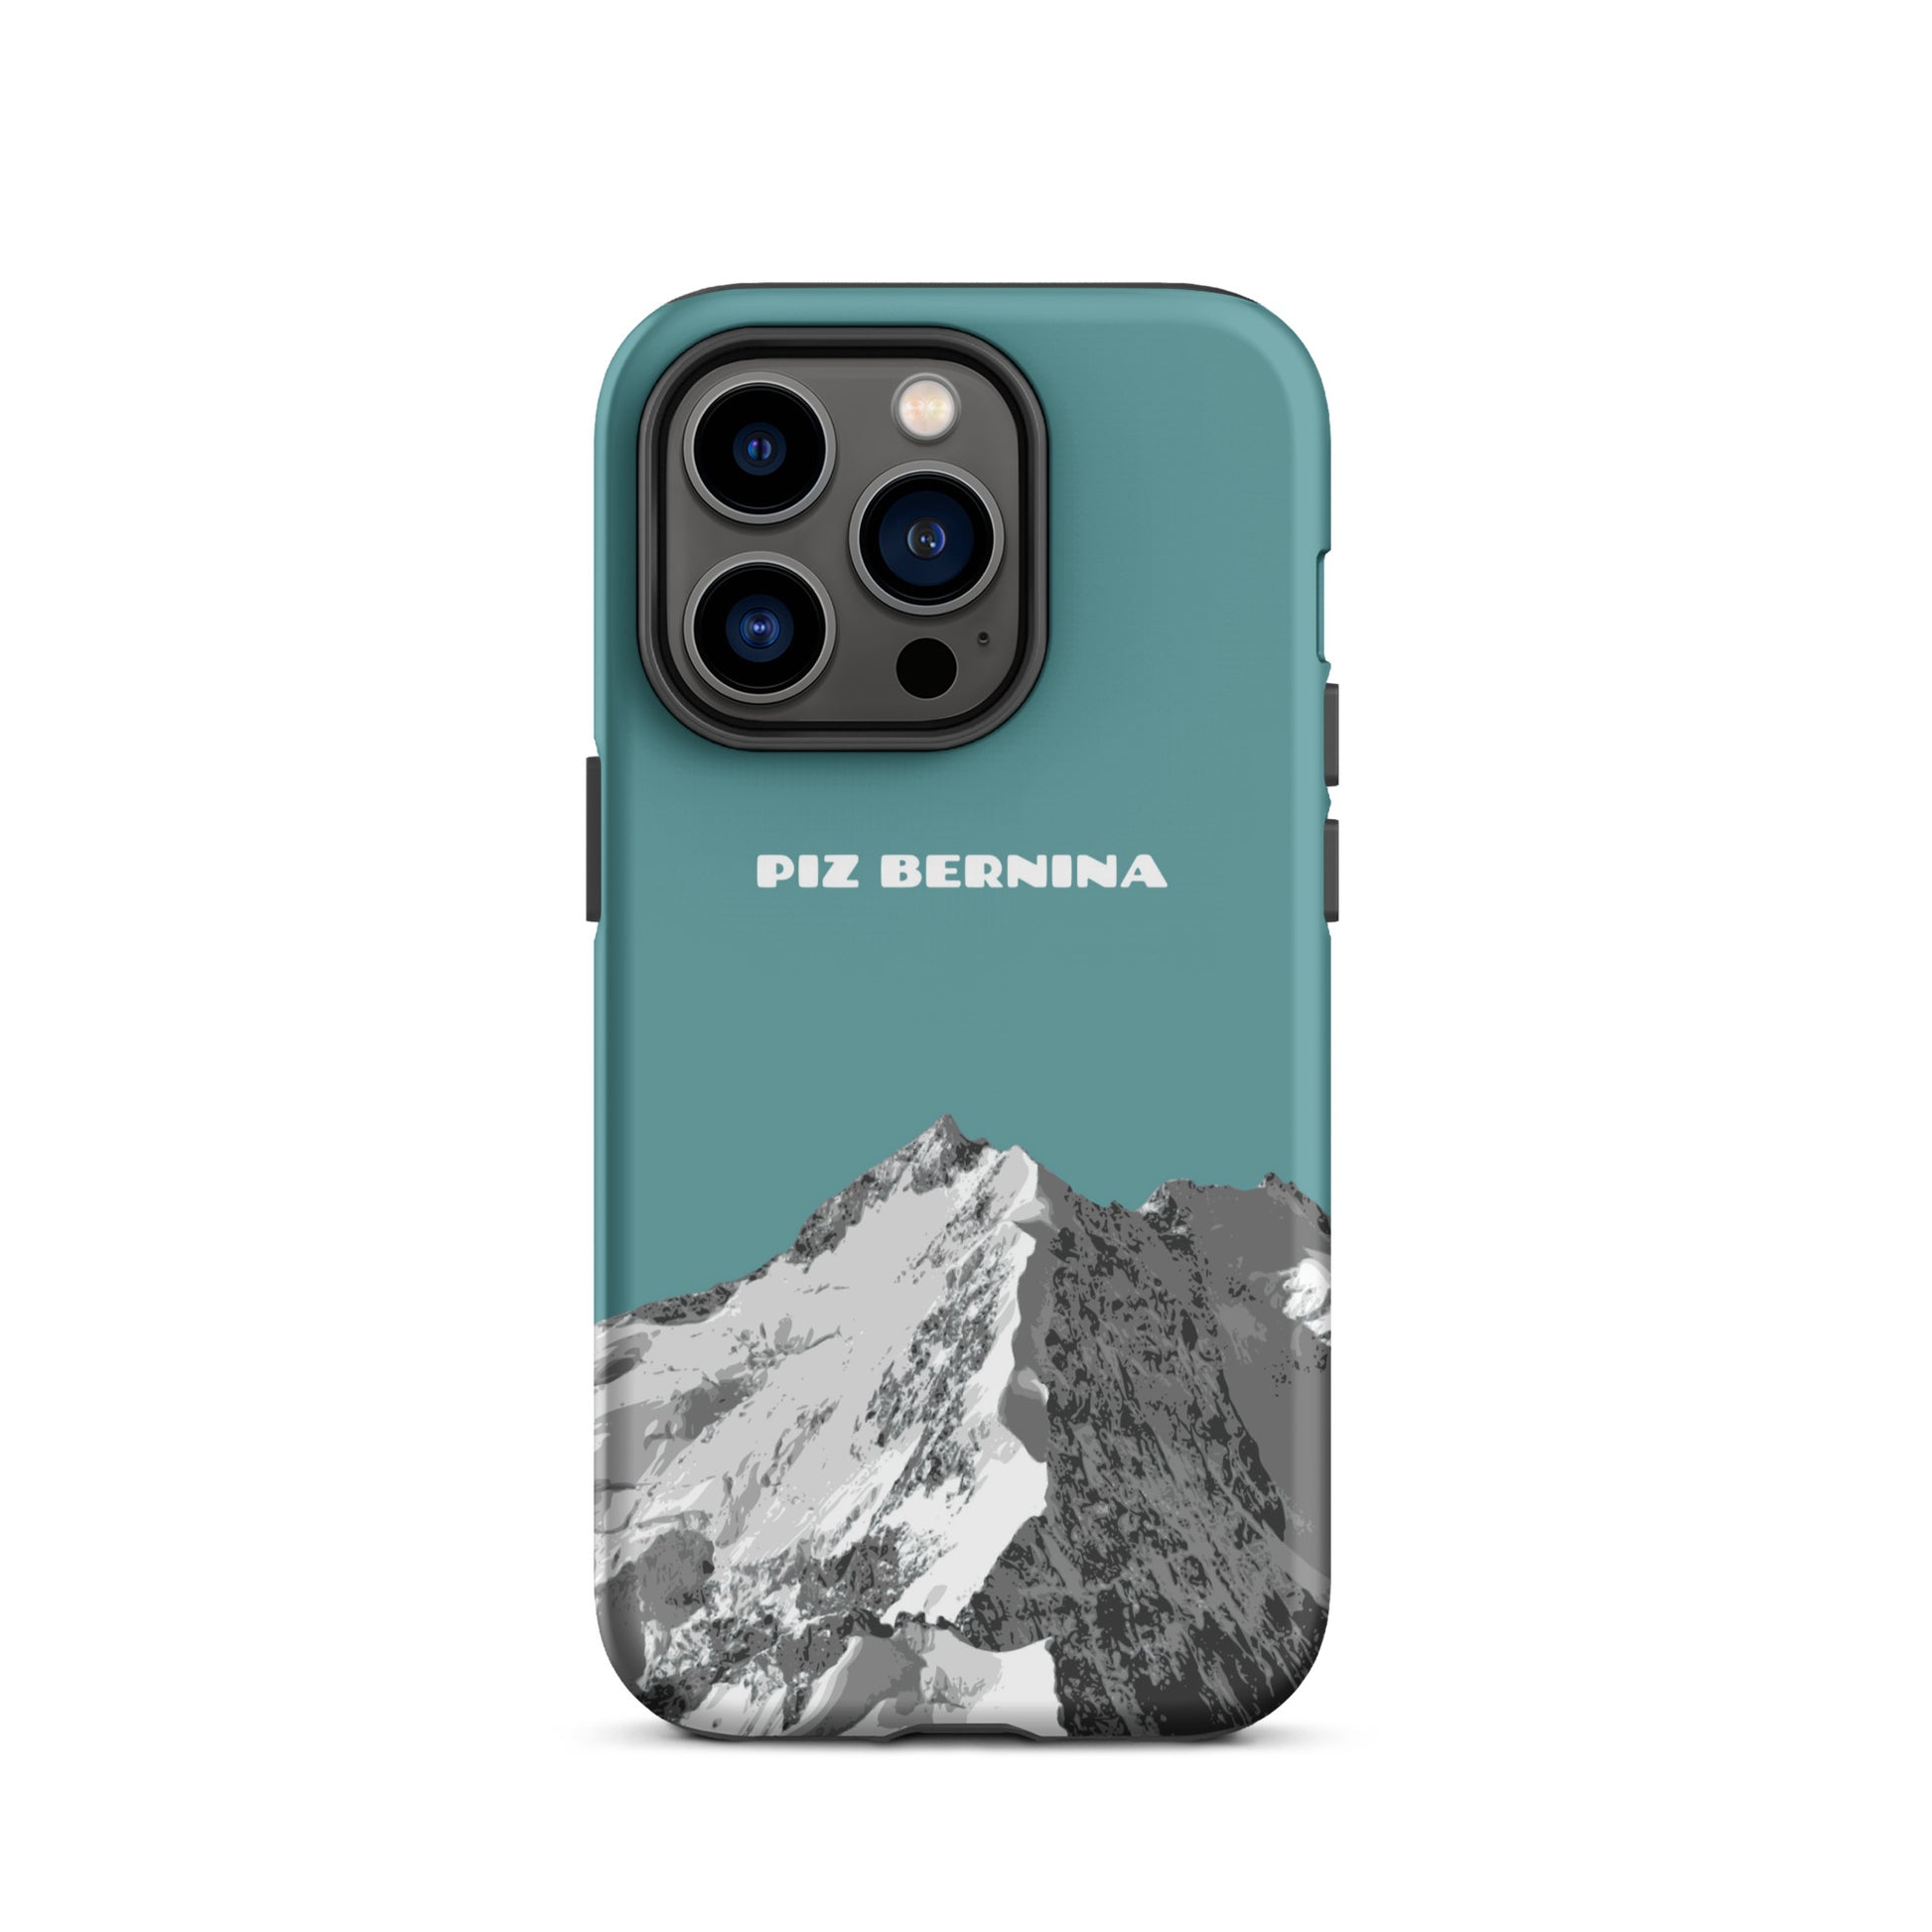 Hülle für das iPhone 14 Pro von Apple in der Farbe Kadettenblau, dass den Piz Bernina in Graubünden zeigt.